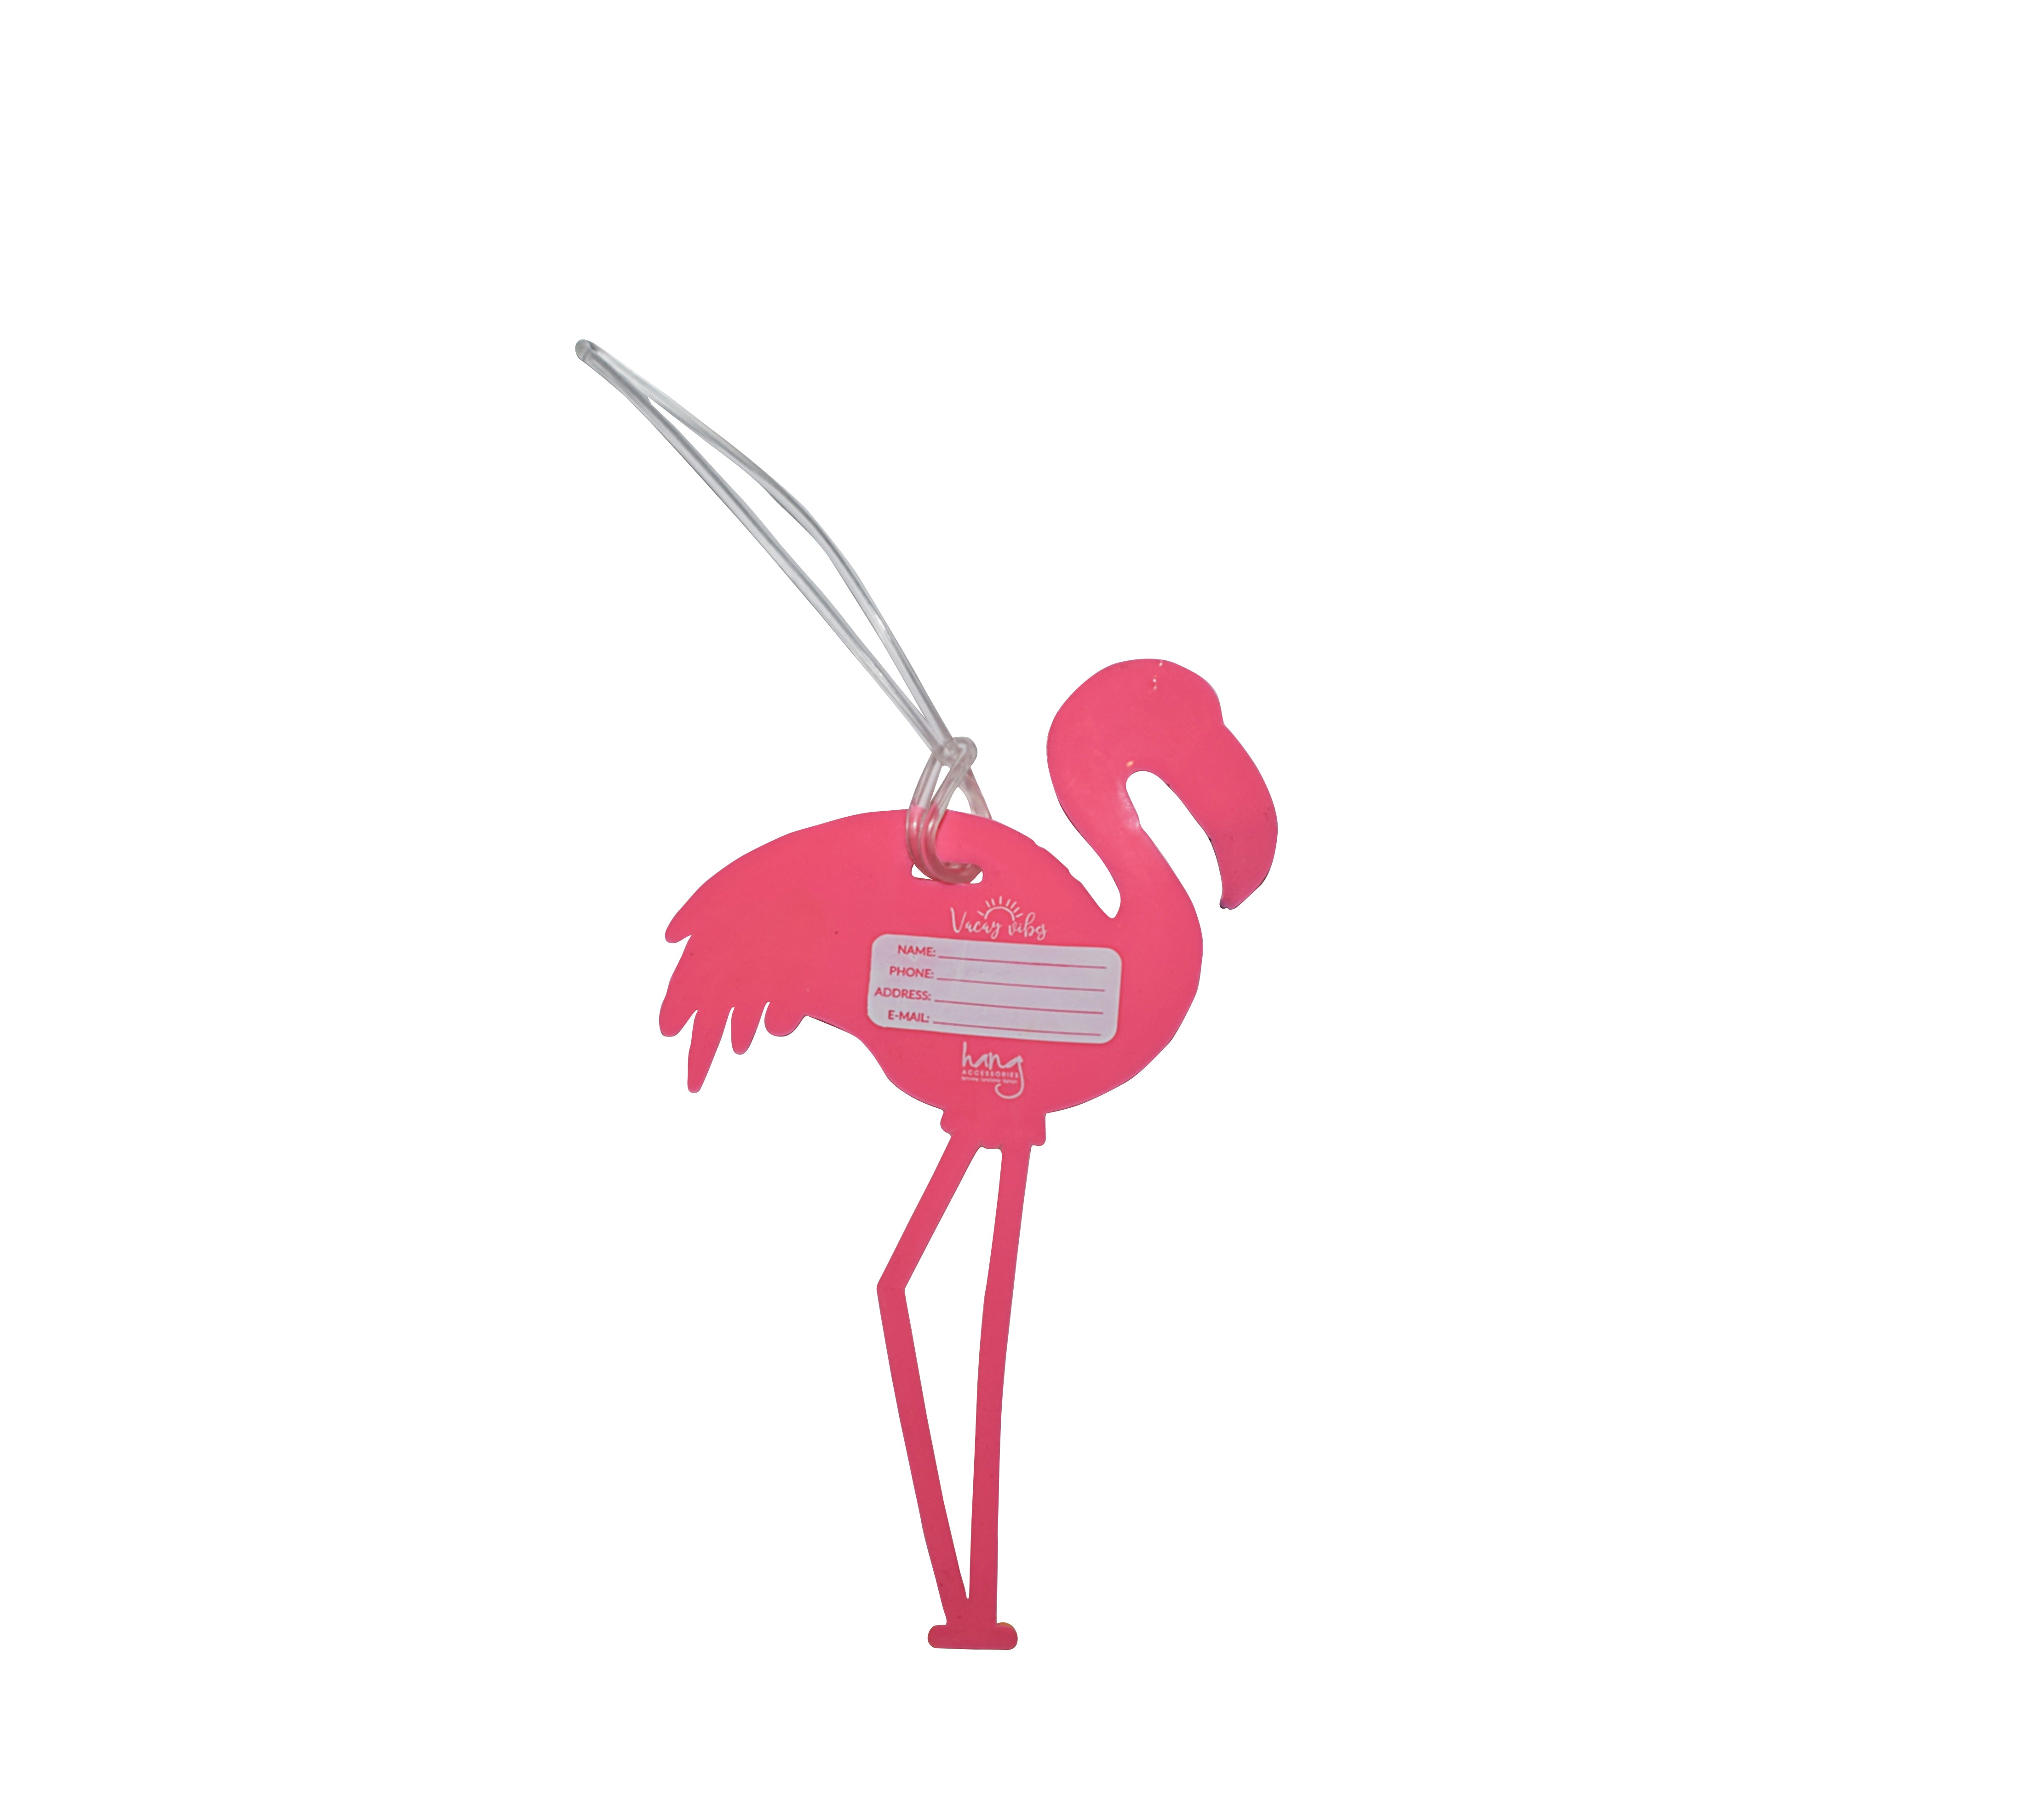 Silicone Luggage Tag Flamingo